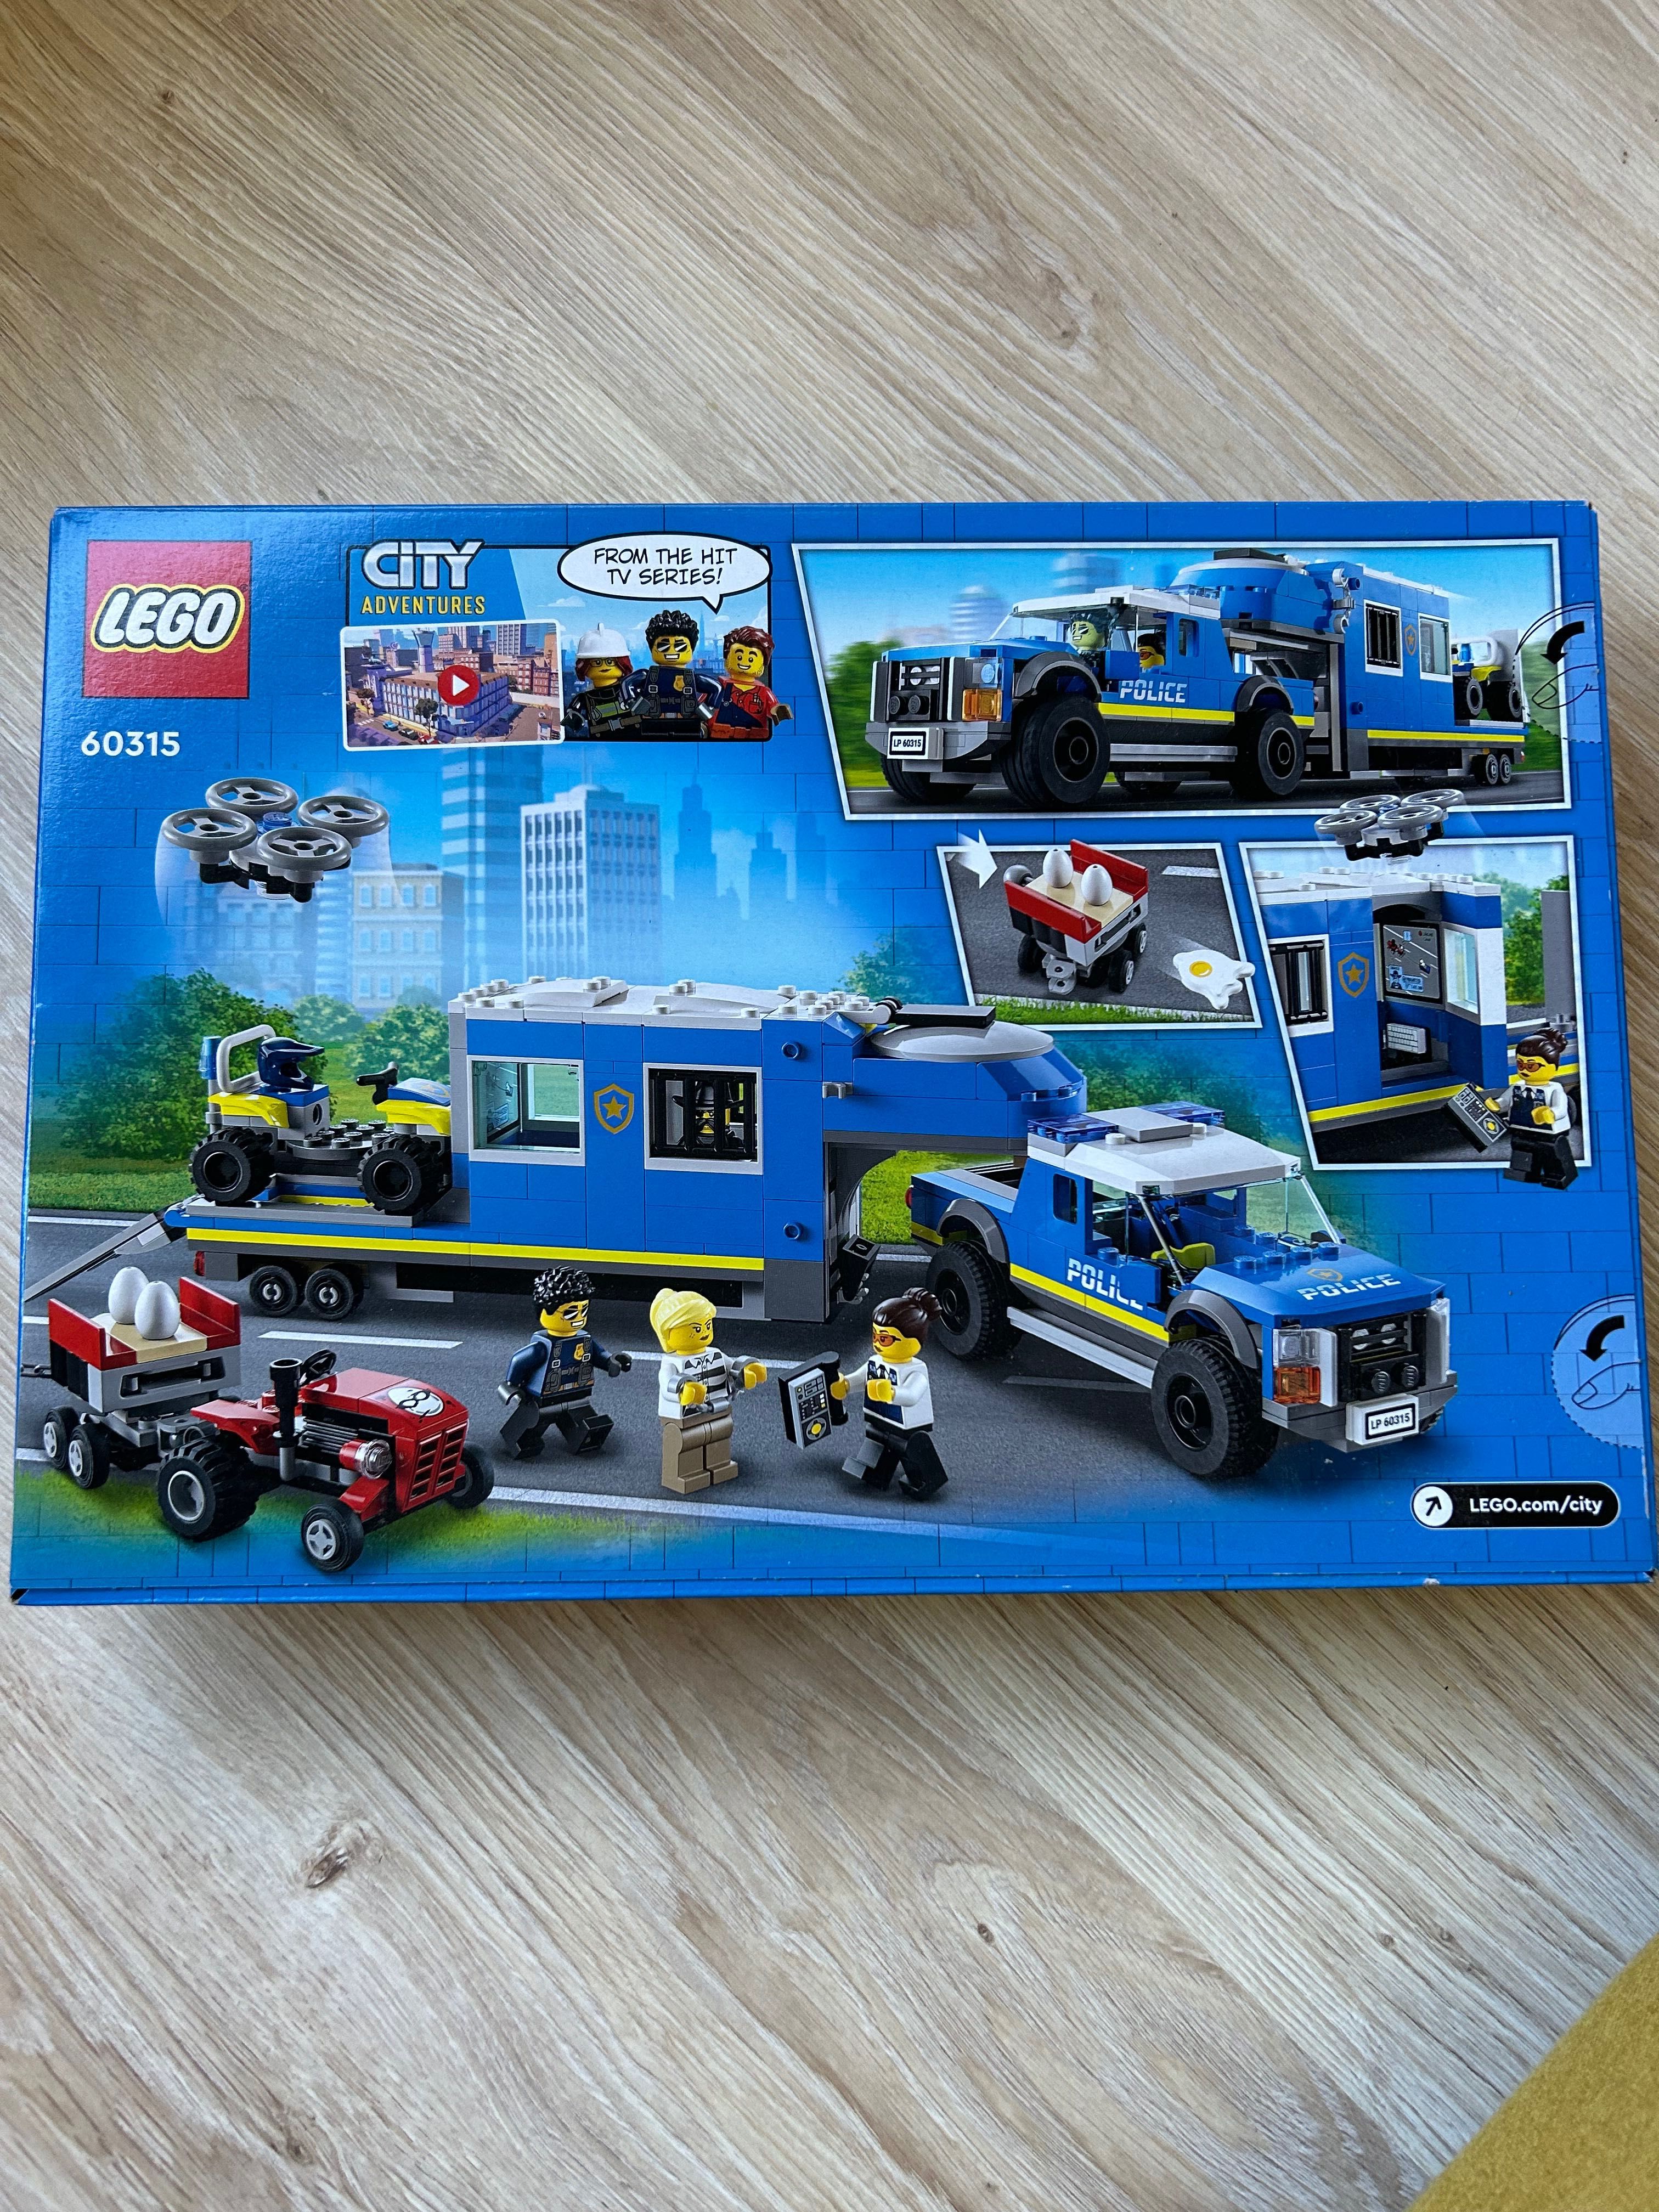 Lego City adventures 60315